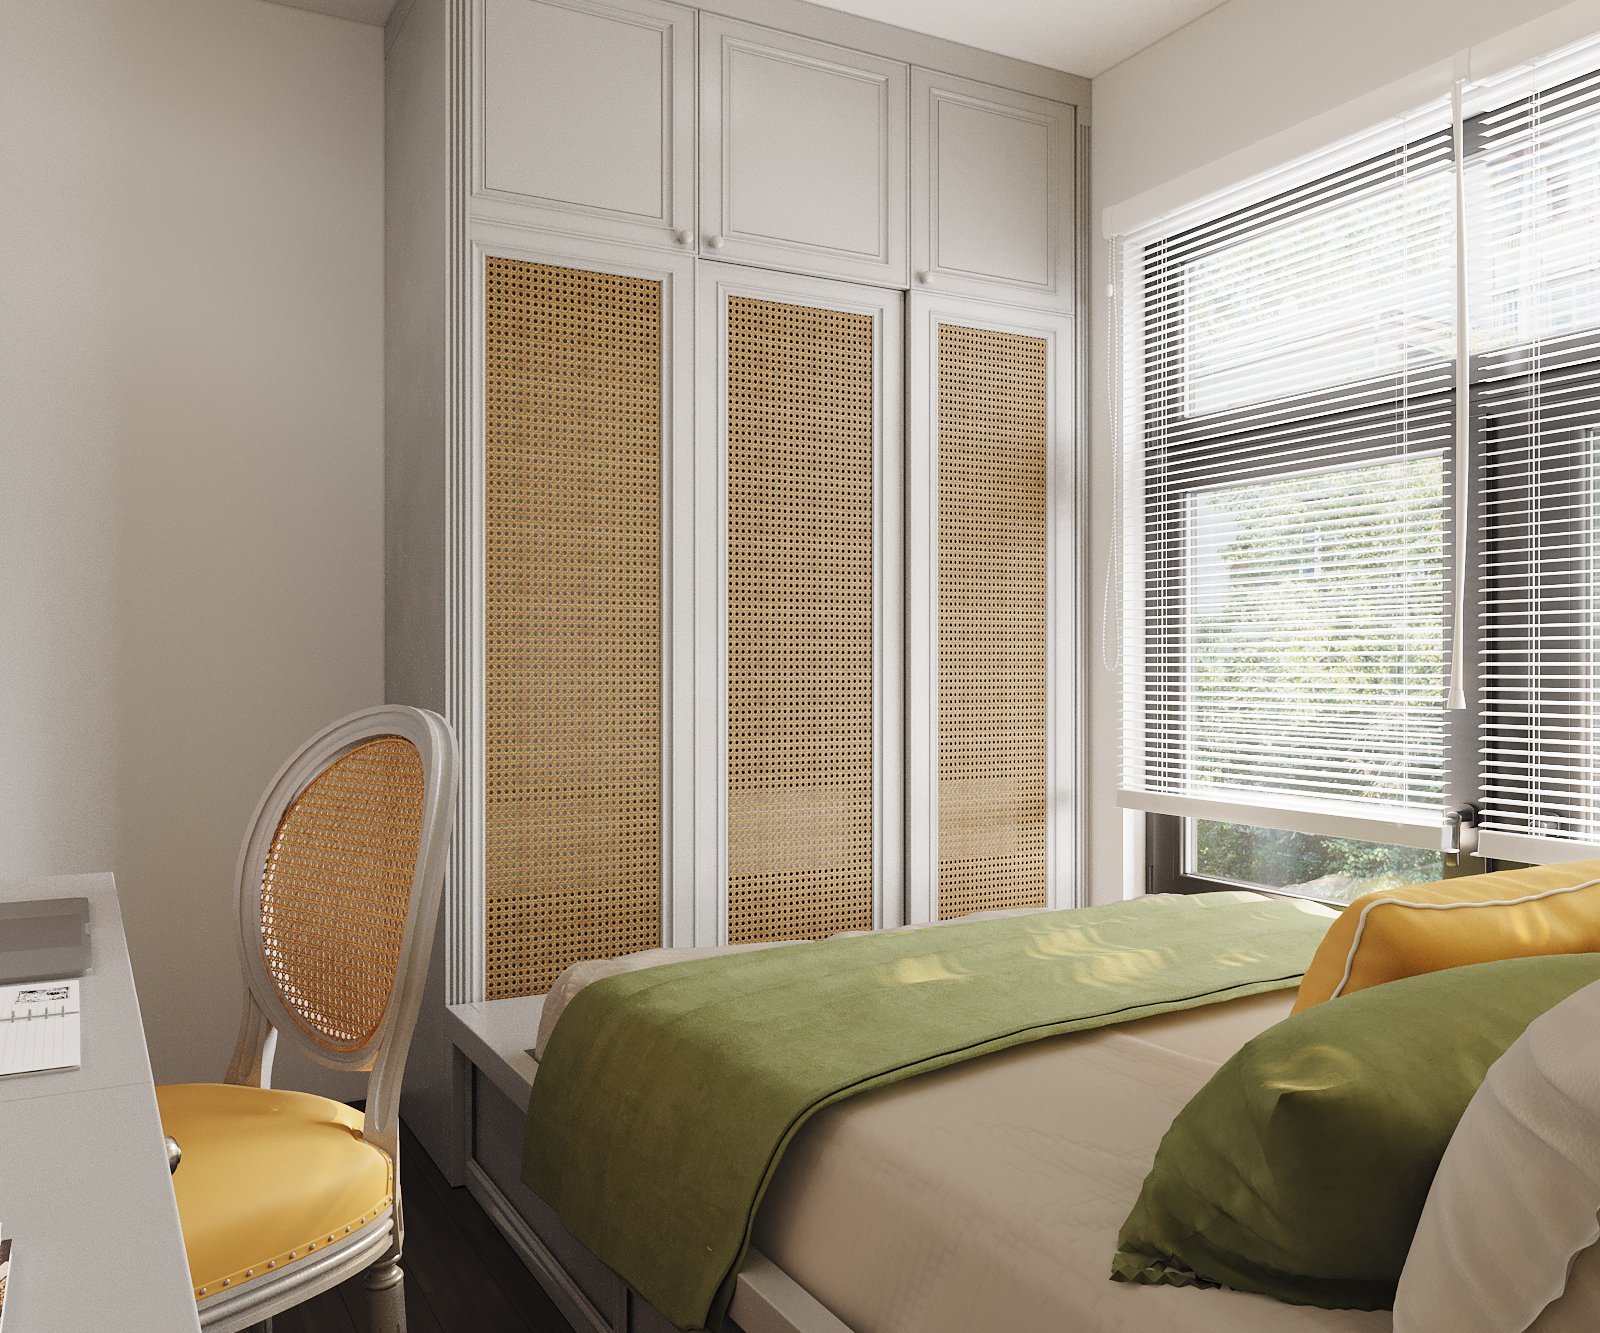 Cửa sổ kính cao rộng mang đến ánh sáng tự nhiên ngập tràn cho không gian phòng ngủ nhỏ, giúp tôn lên vẻ đẹp của đường nét thiết kế nội thất.